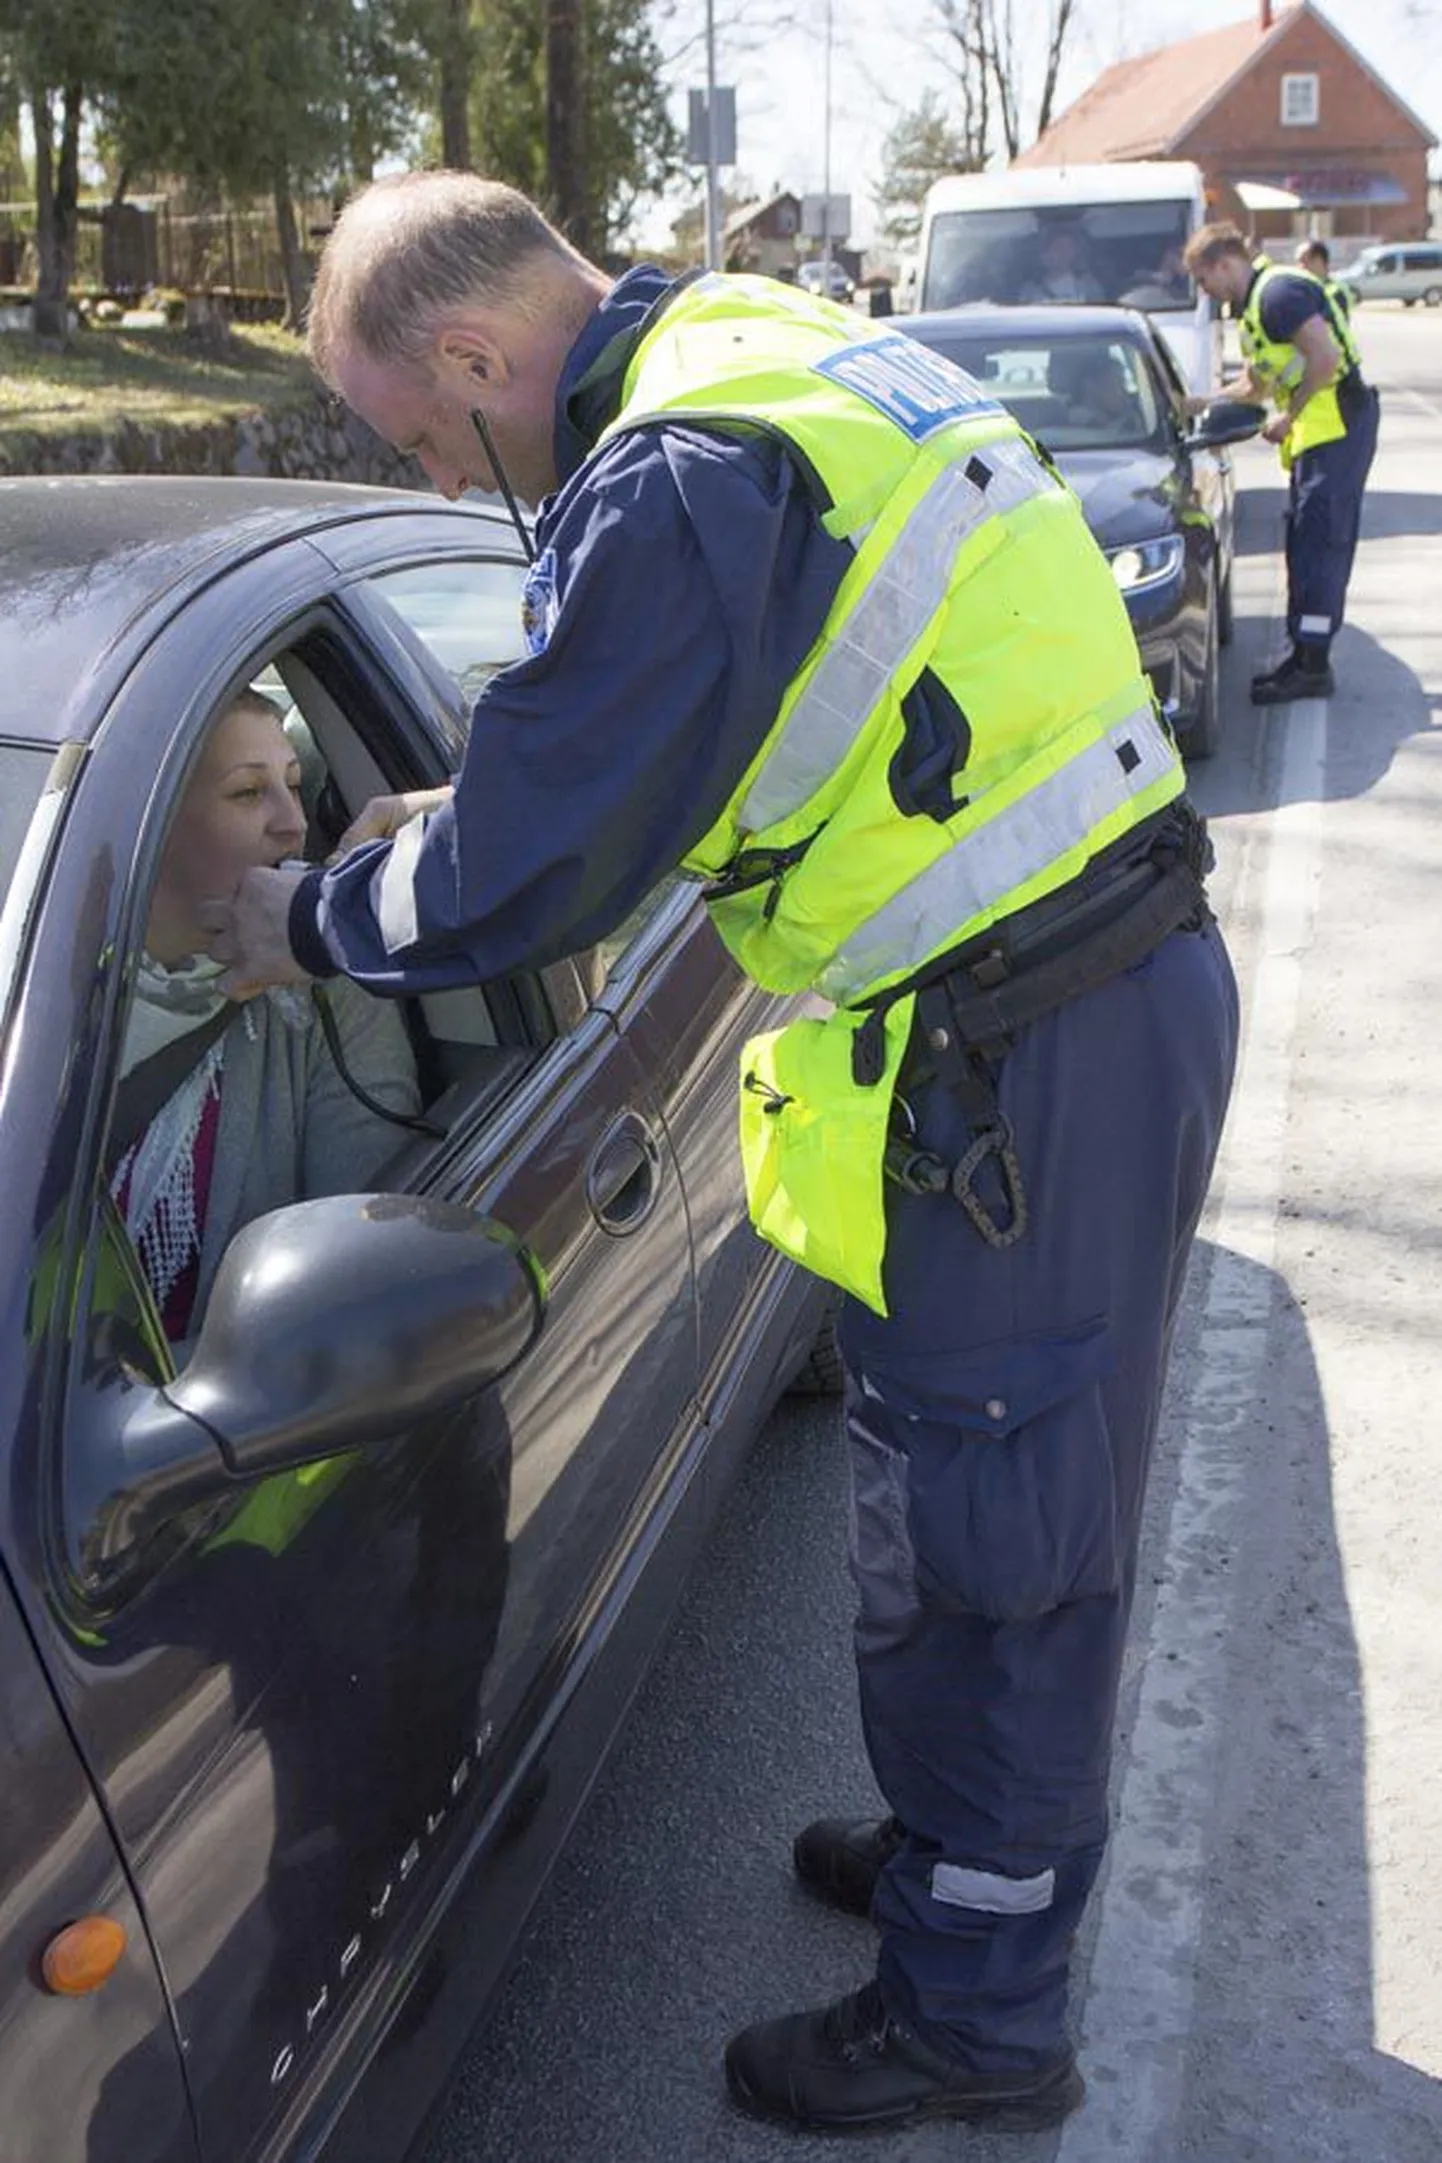 Politsei kinnitusel on sel aastal suurendatud joobes juhtide tabamiseks mõeldud reidide hulka ning Lõuna-Eestis on kokku kontrollitud 95 595 roolikeeraja kainust. Pisut vähem kui üks protsent juhtidest on olnud joobes.